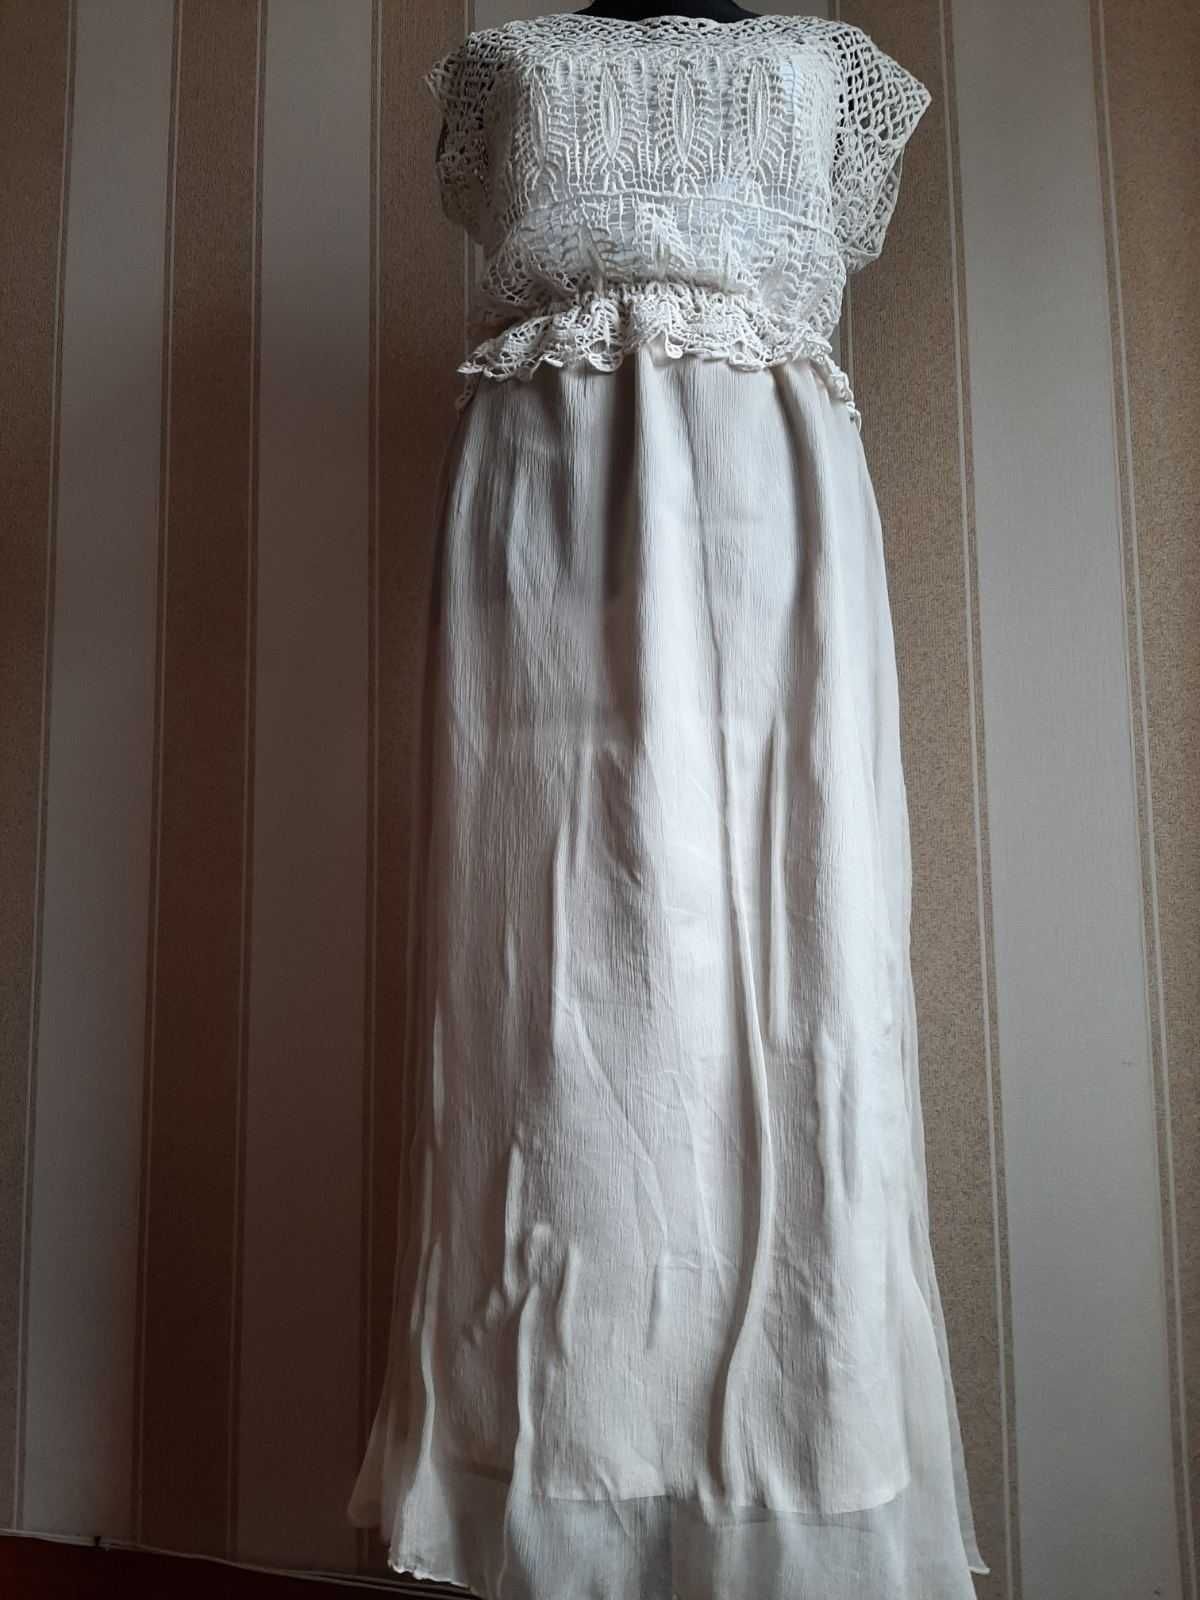 Платье-сарафан летнее, длинное, макси, натуральная ткань.